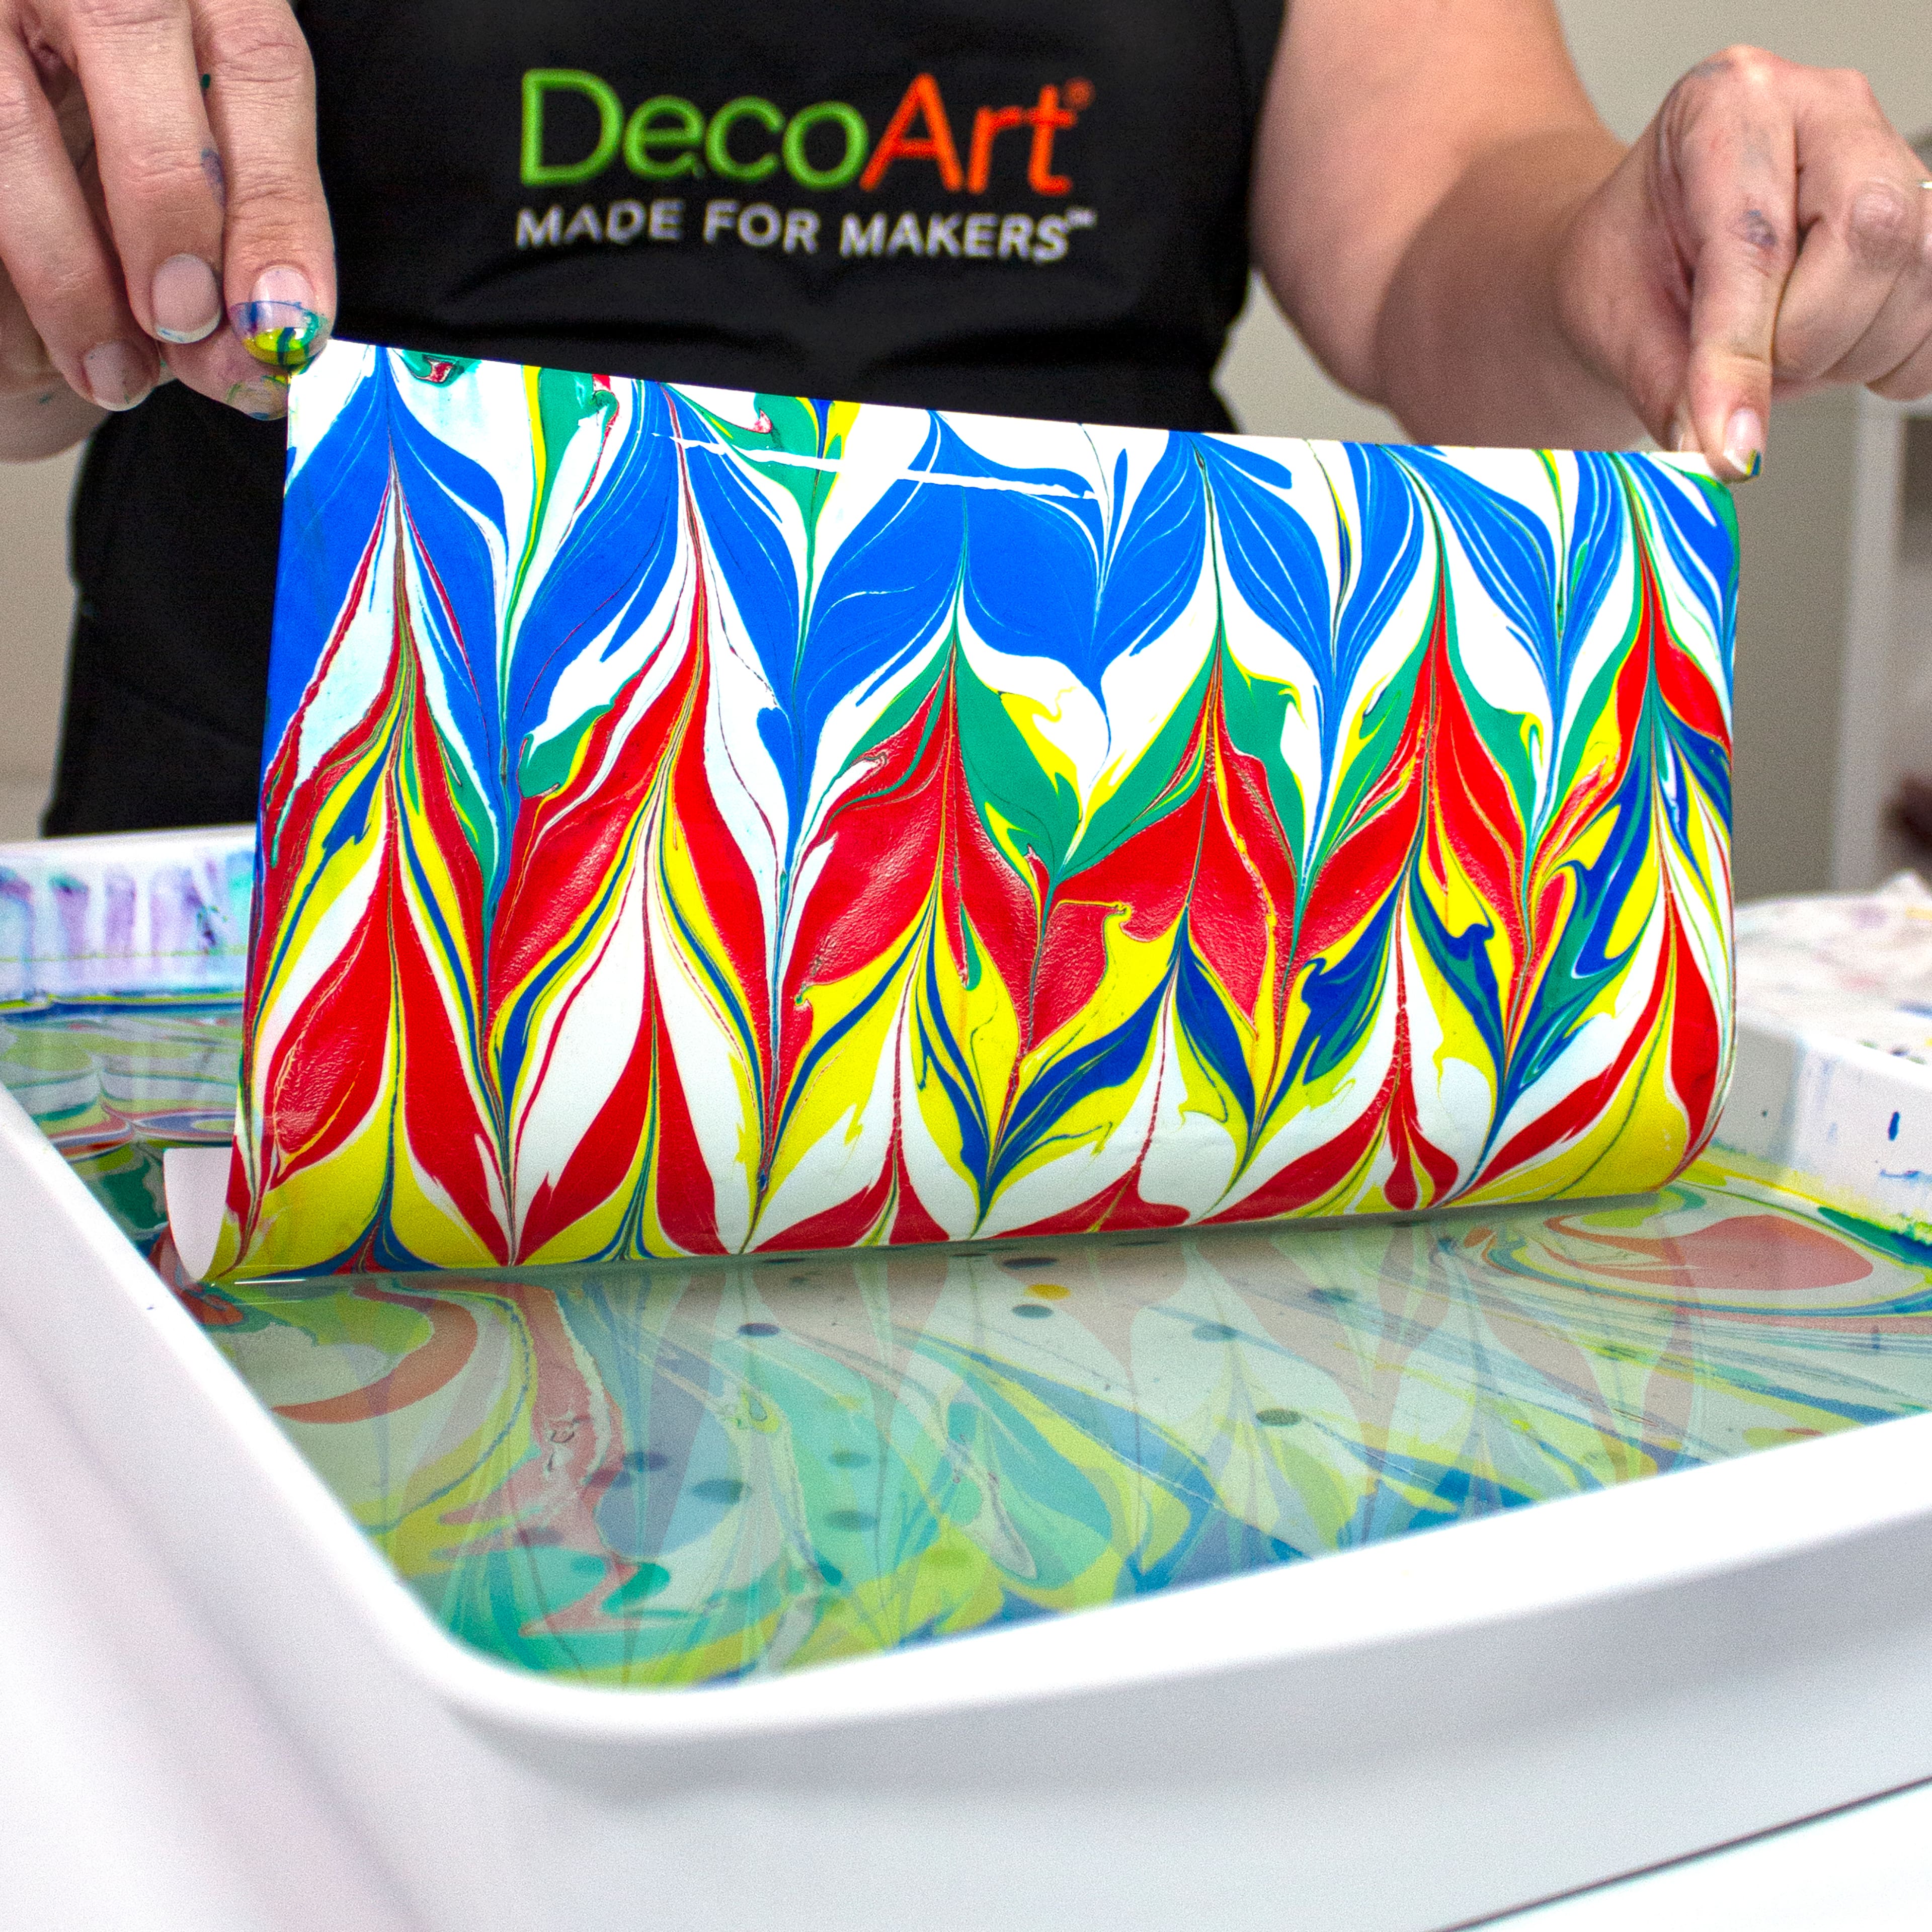 DecoArt&#xAE; Primaries Water Marbling Acrylic&#x2122; Paint Set